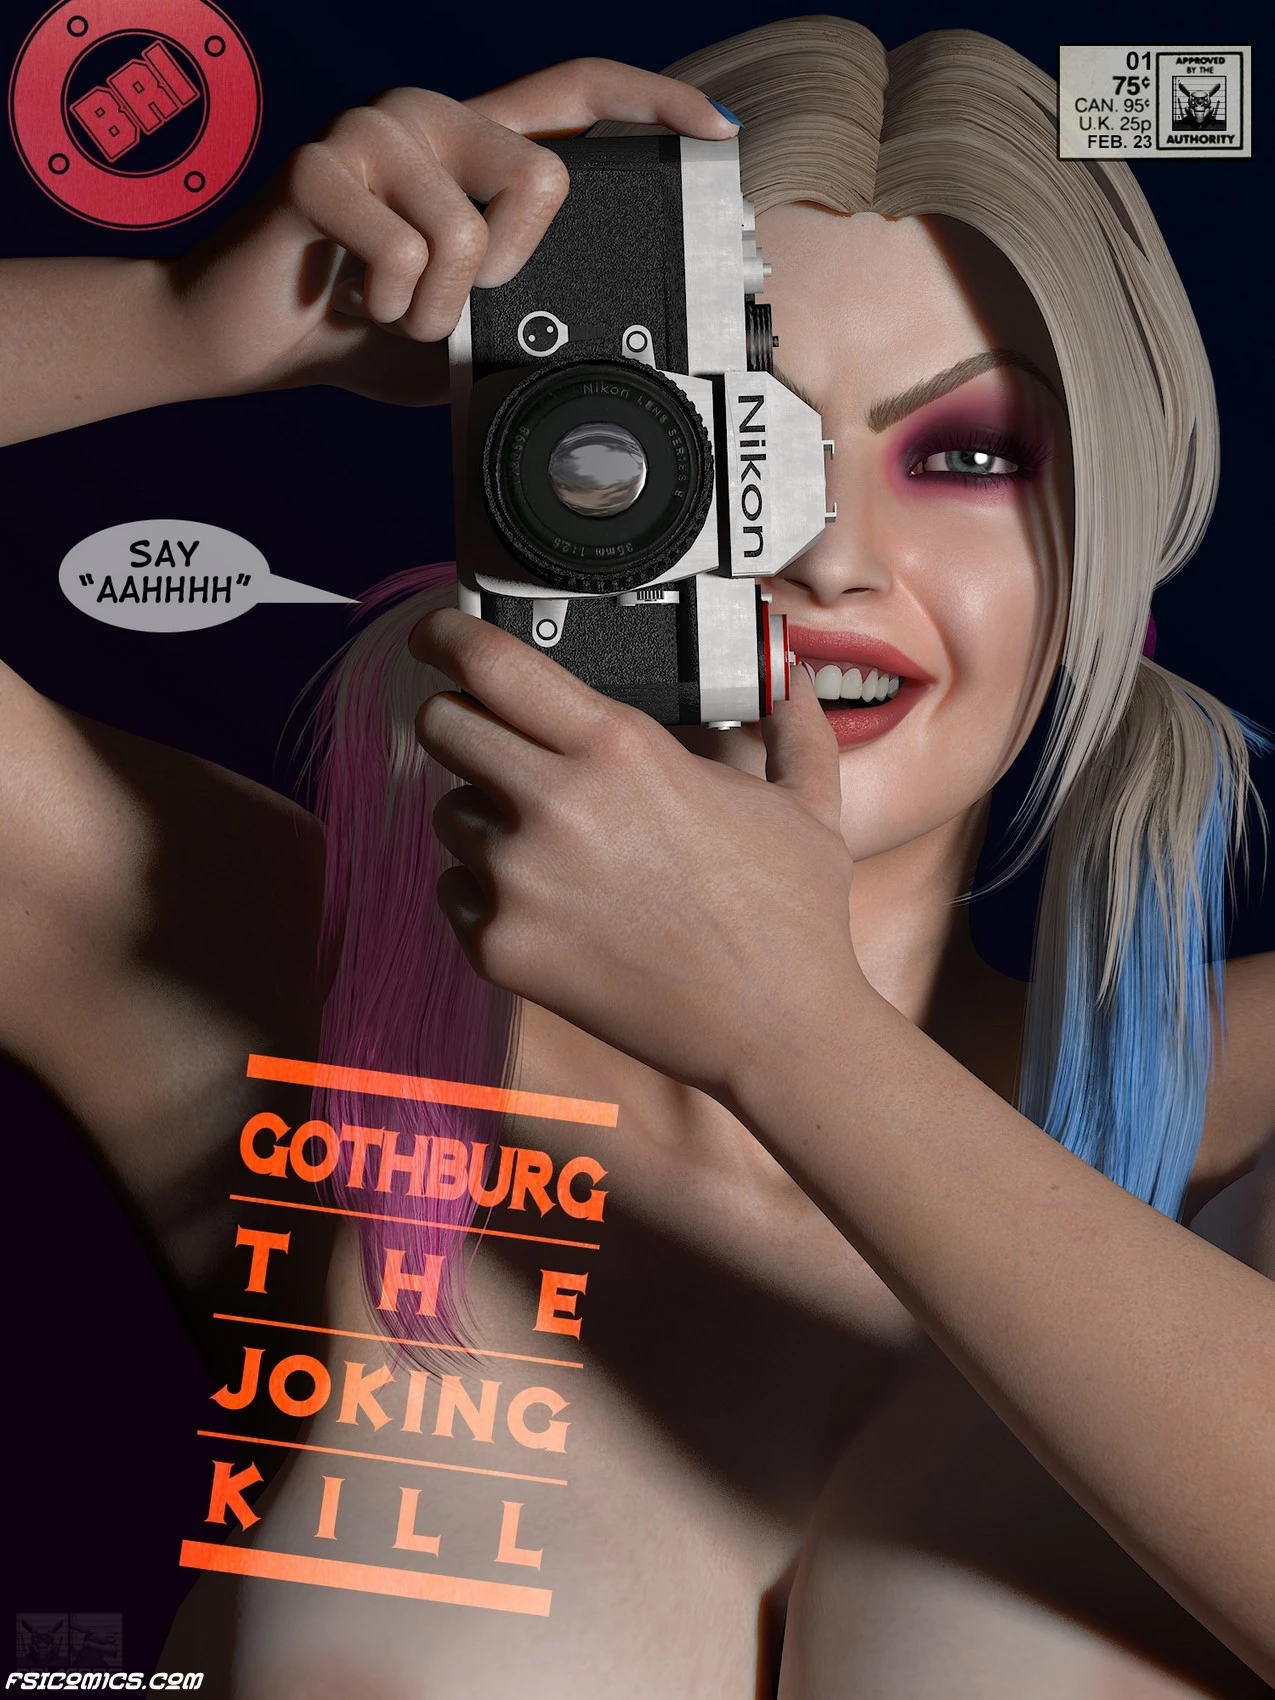 Gothburg The Joking Kill - Briaeros - 3 - FSIComics